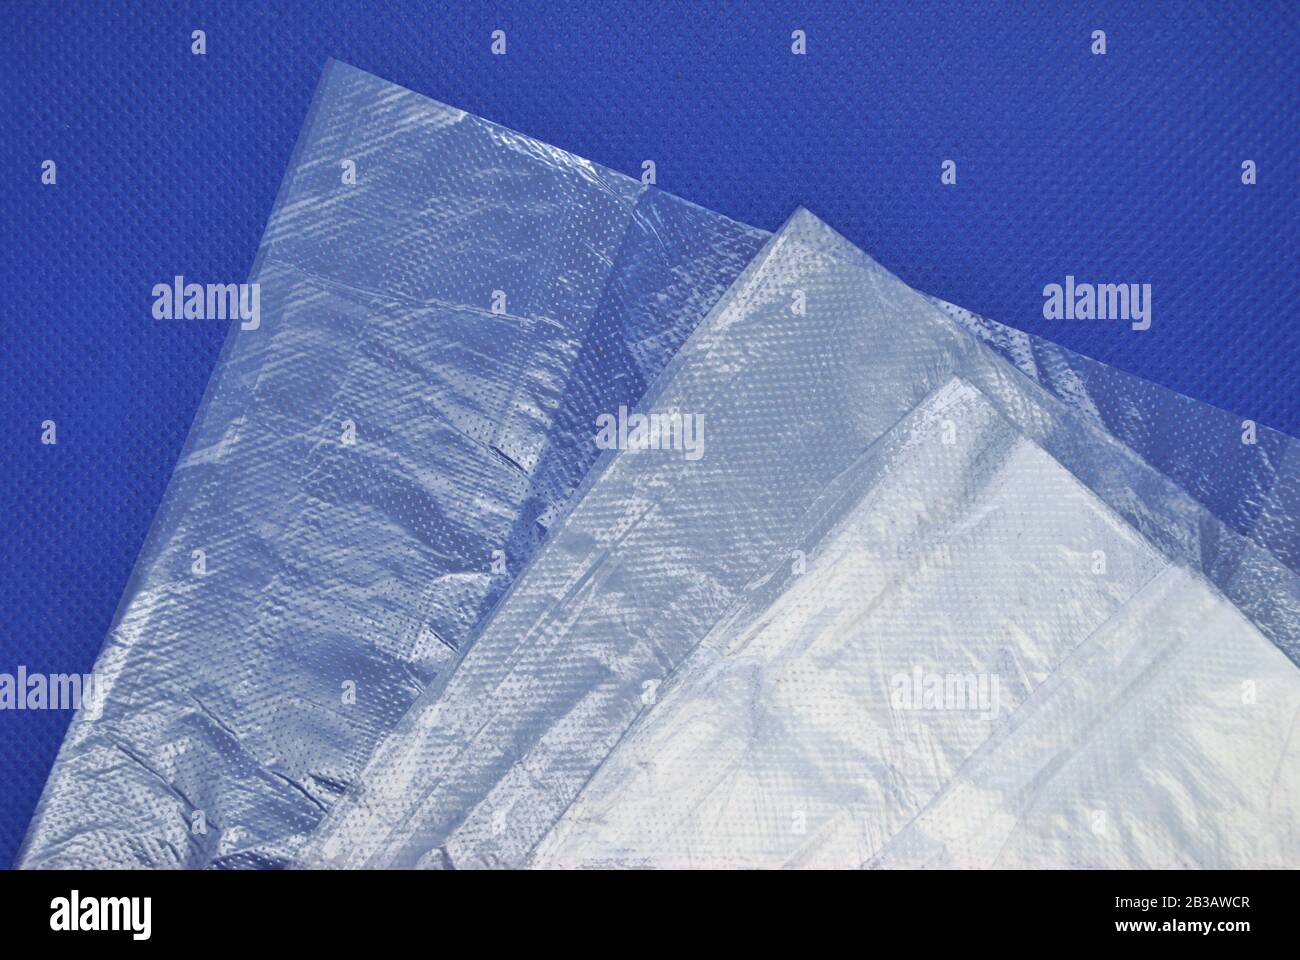 Sacs en polyéthylène transparents, transparents, transparents et neufs pliés du supermarché sur un fond bleu Banque D'Images